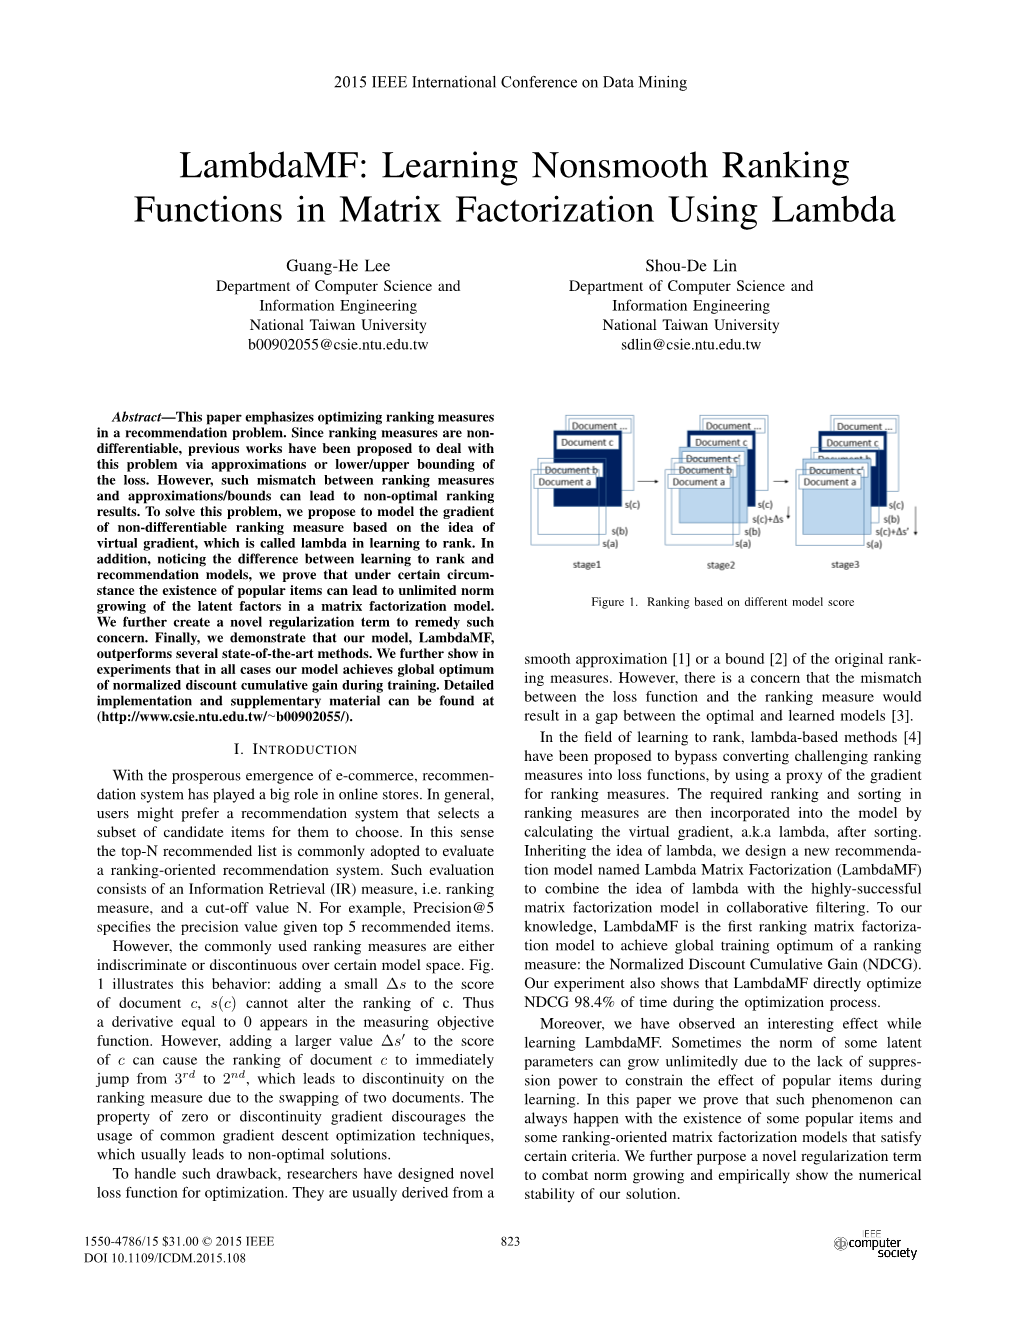 Lambdamf: Learning Nonsmooth Ranking Functions in Matrix Factorization Using Lambda